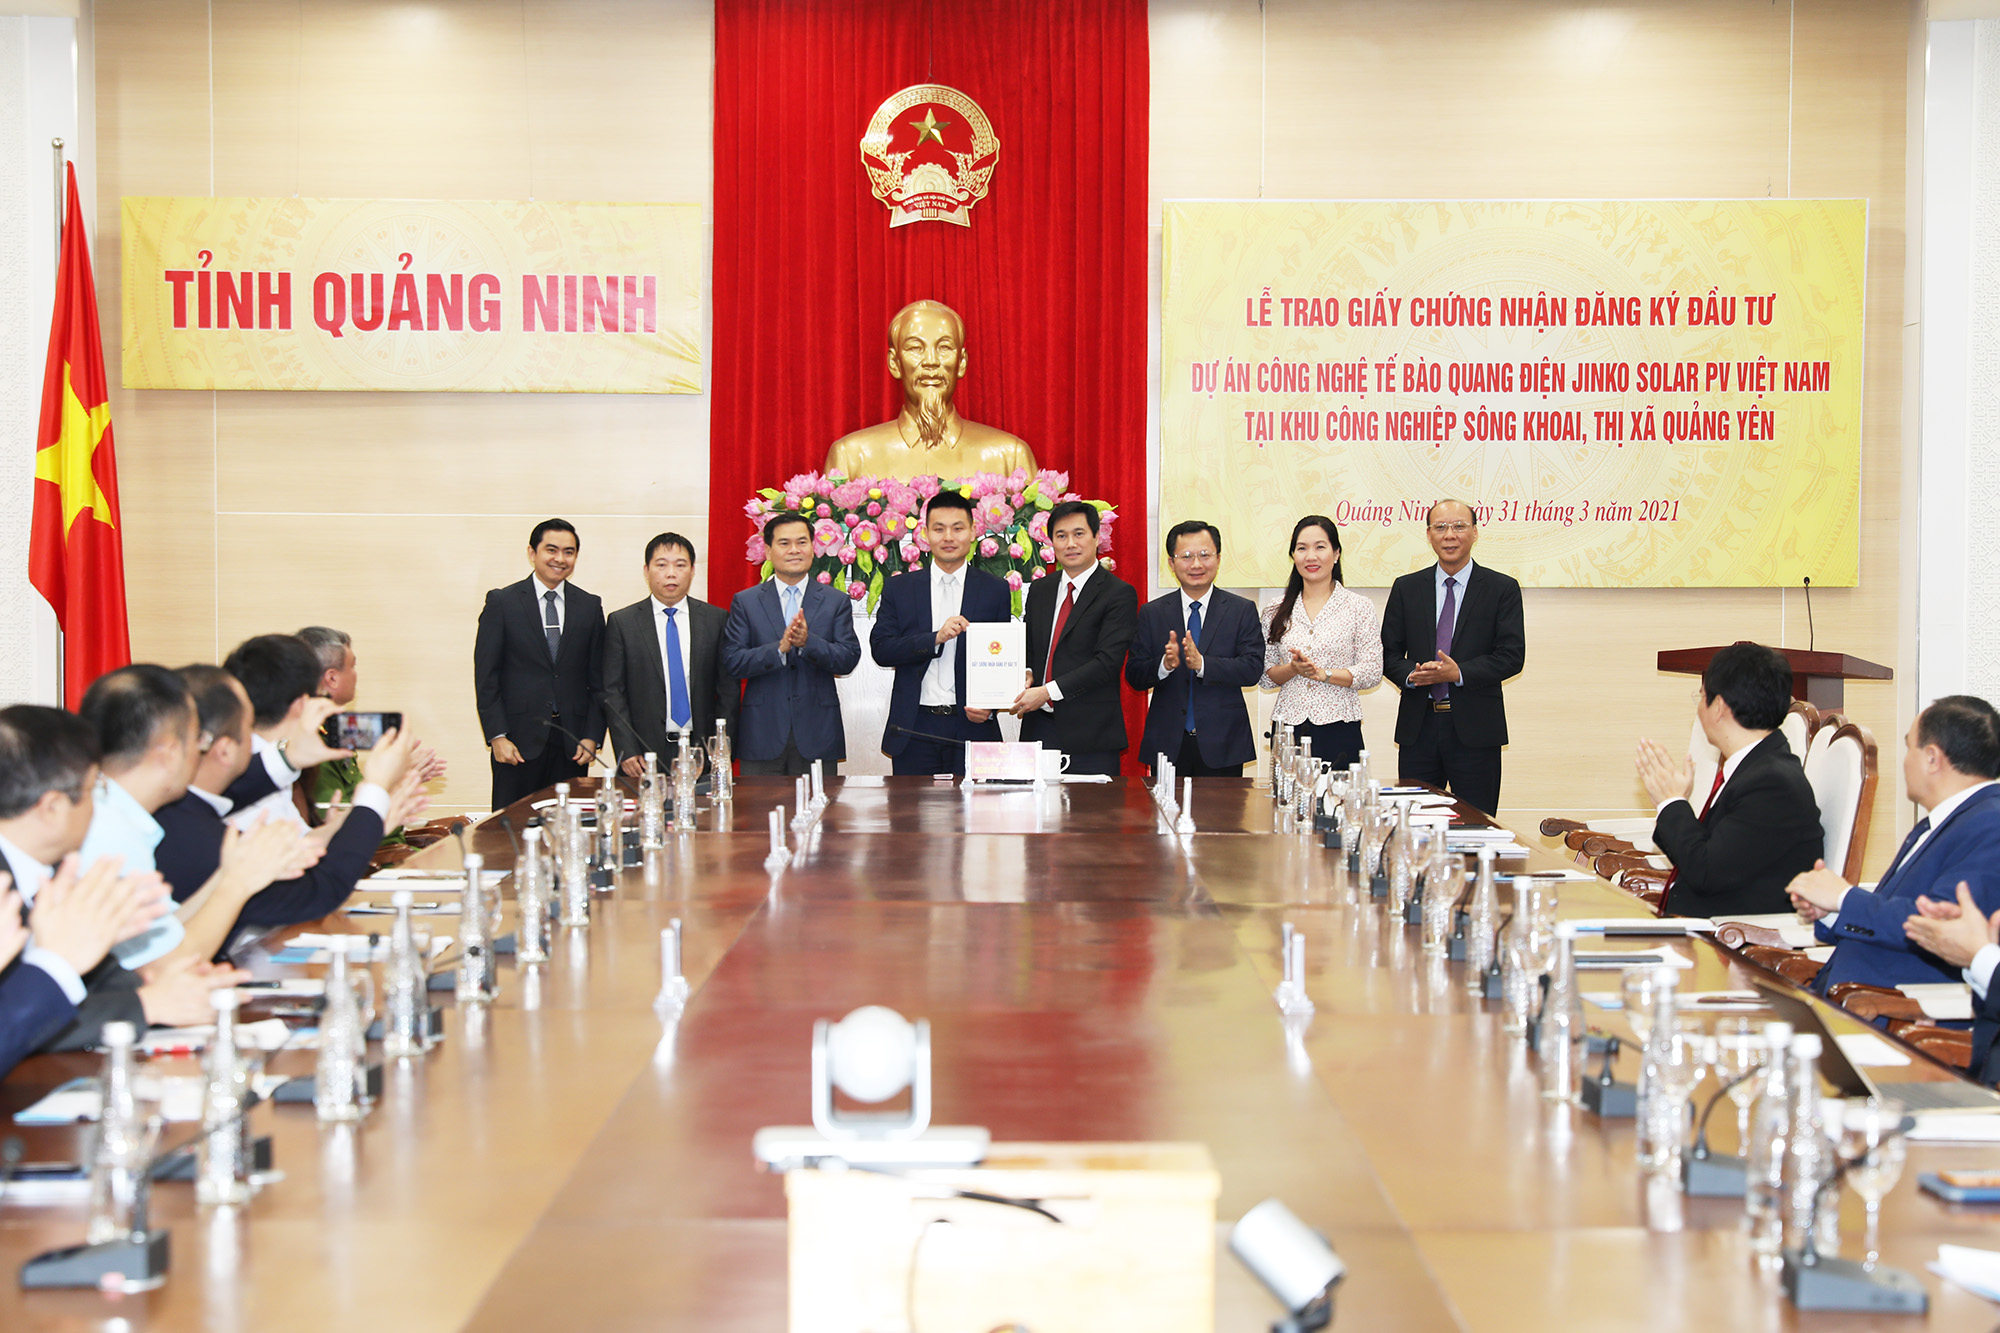 Tỉnh Quảng Ninh trao giấy chứng nhận đầu tư